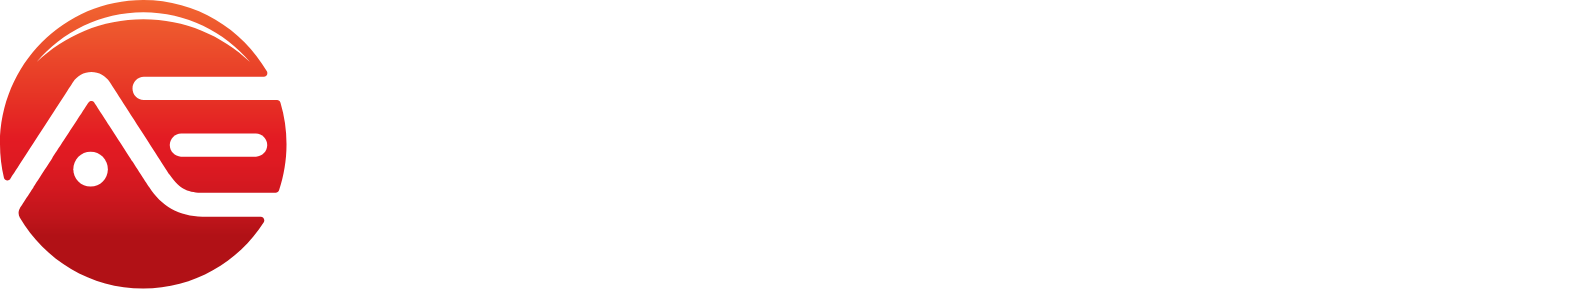 Alliance Entertainment logo grand pour les fonds sombres (PNG transparent)